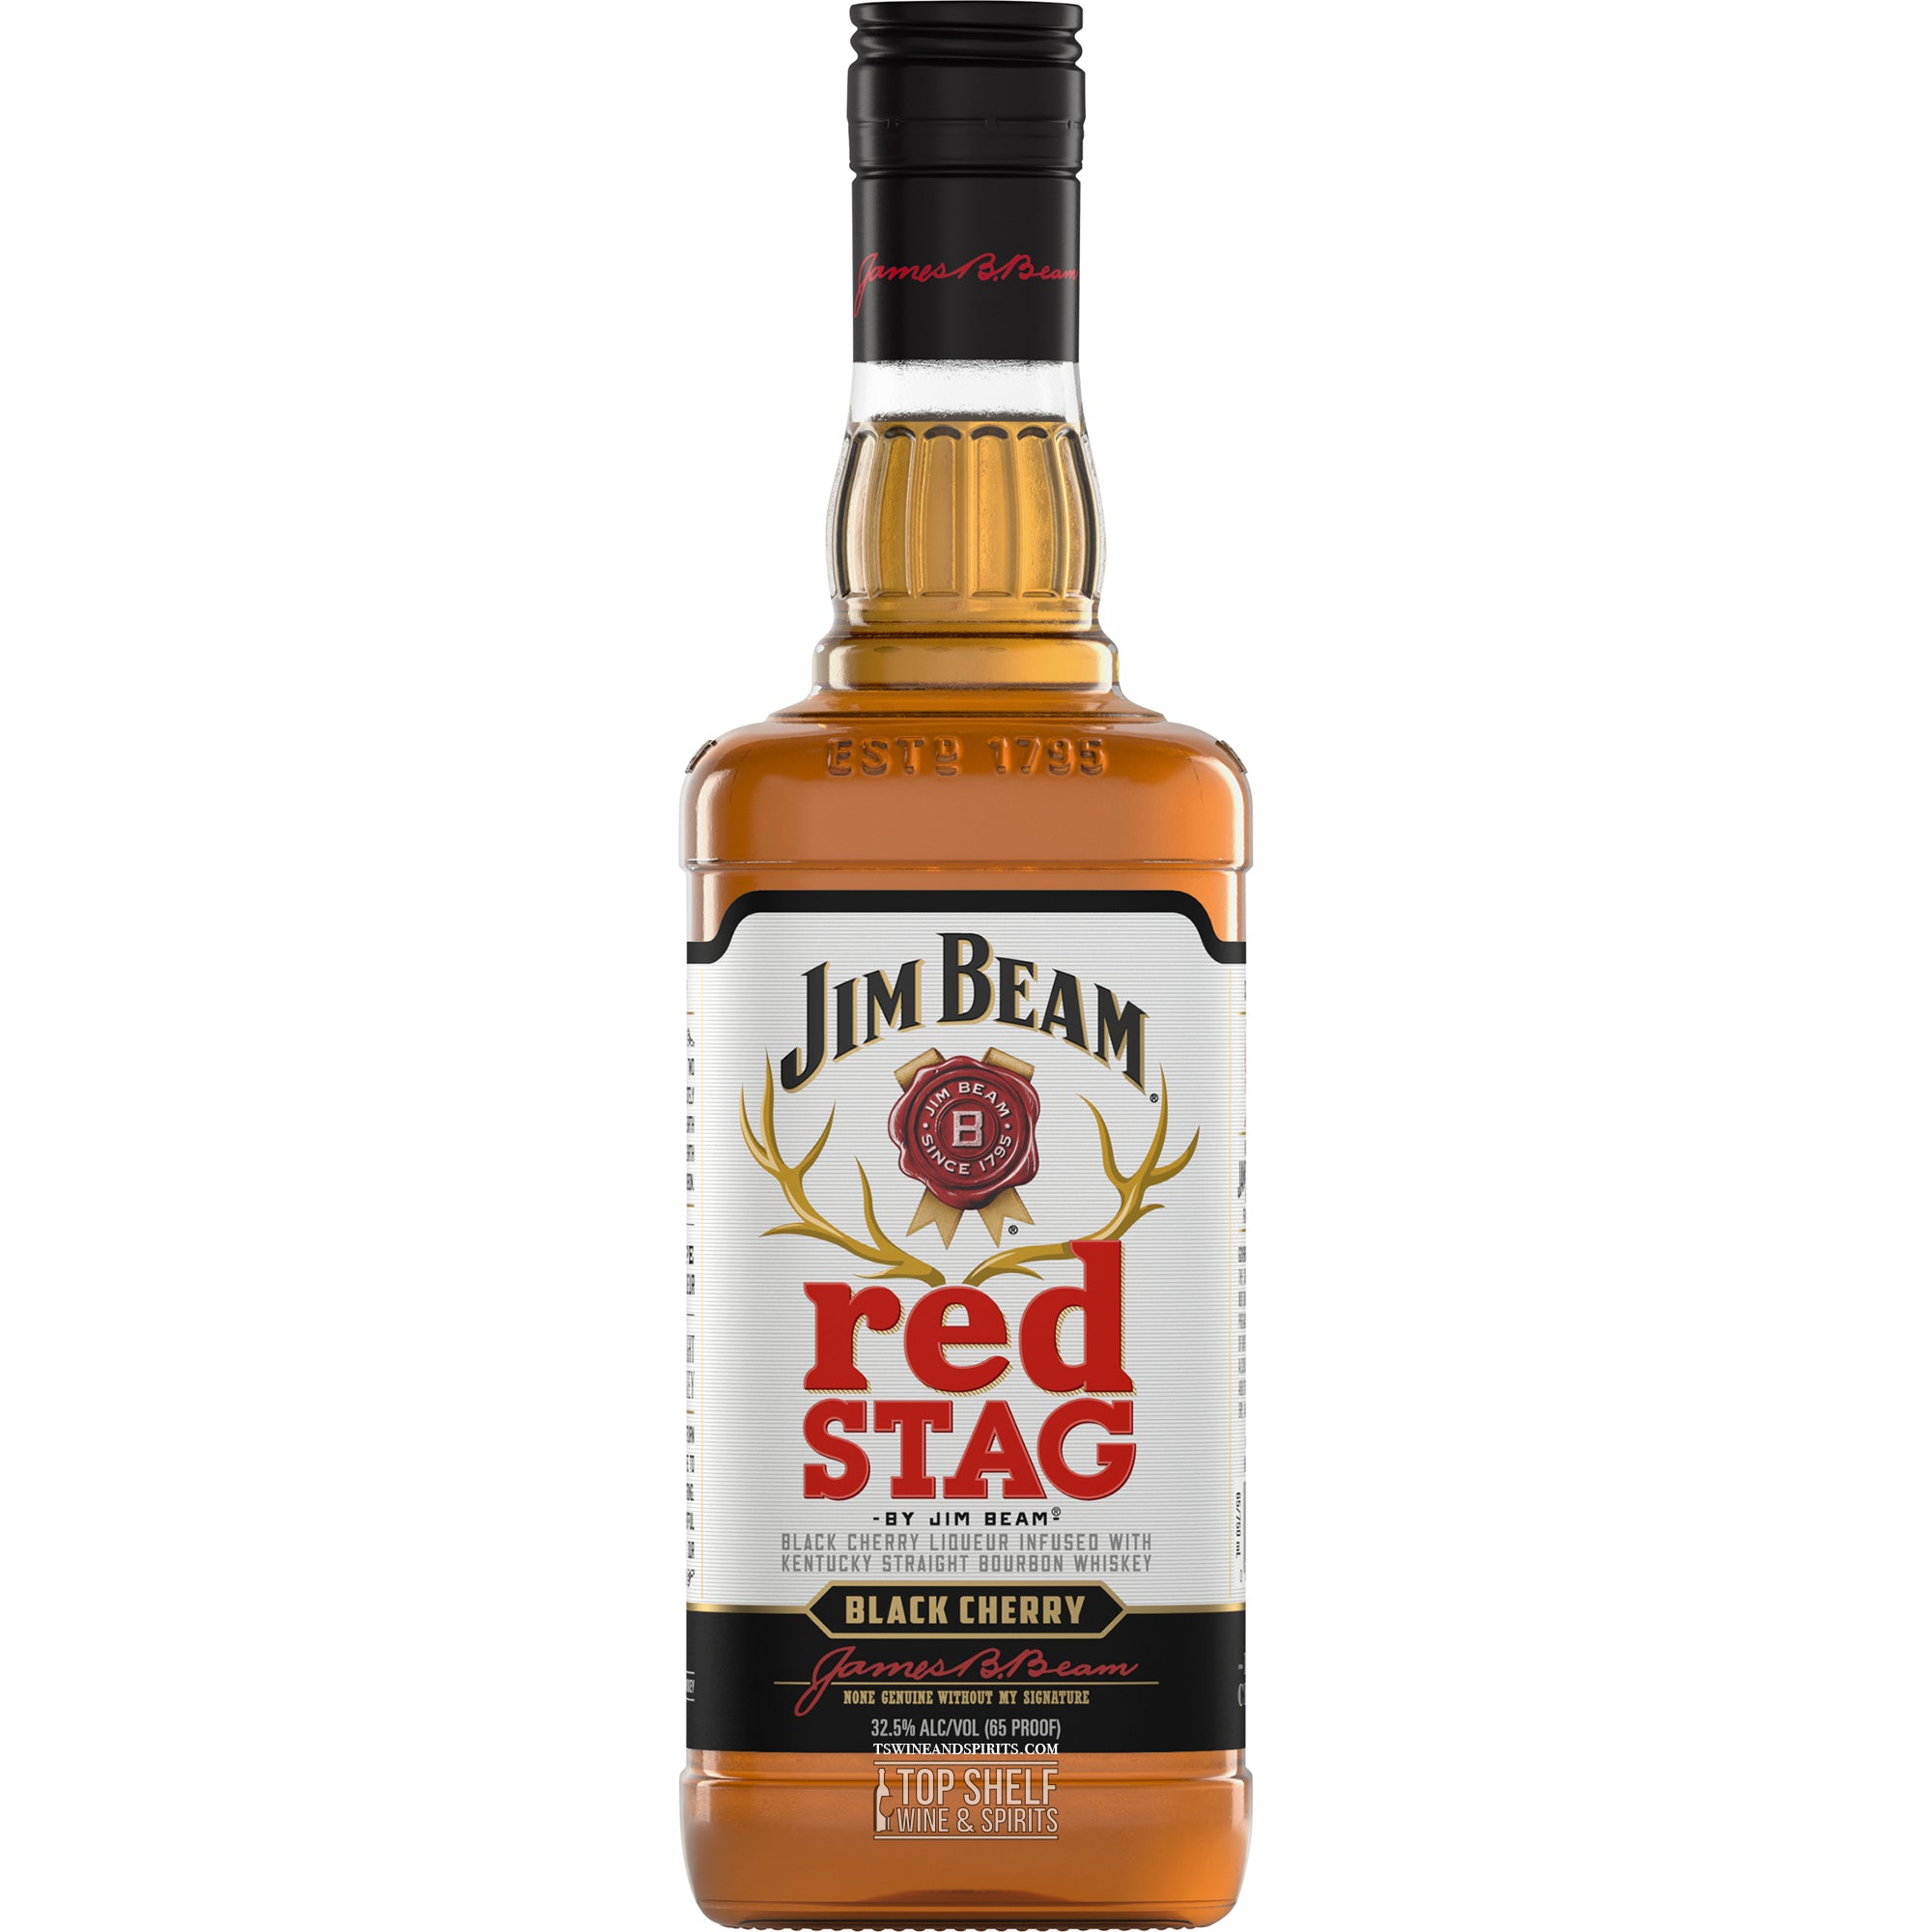 Jim Beam Stag Cherry Black Red